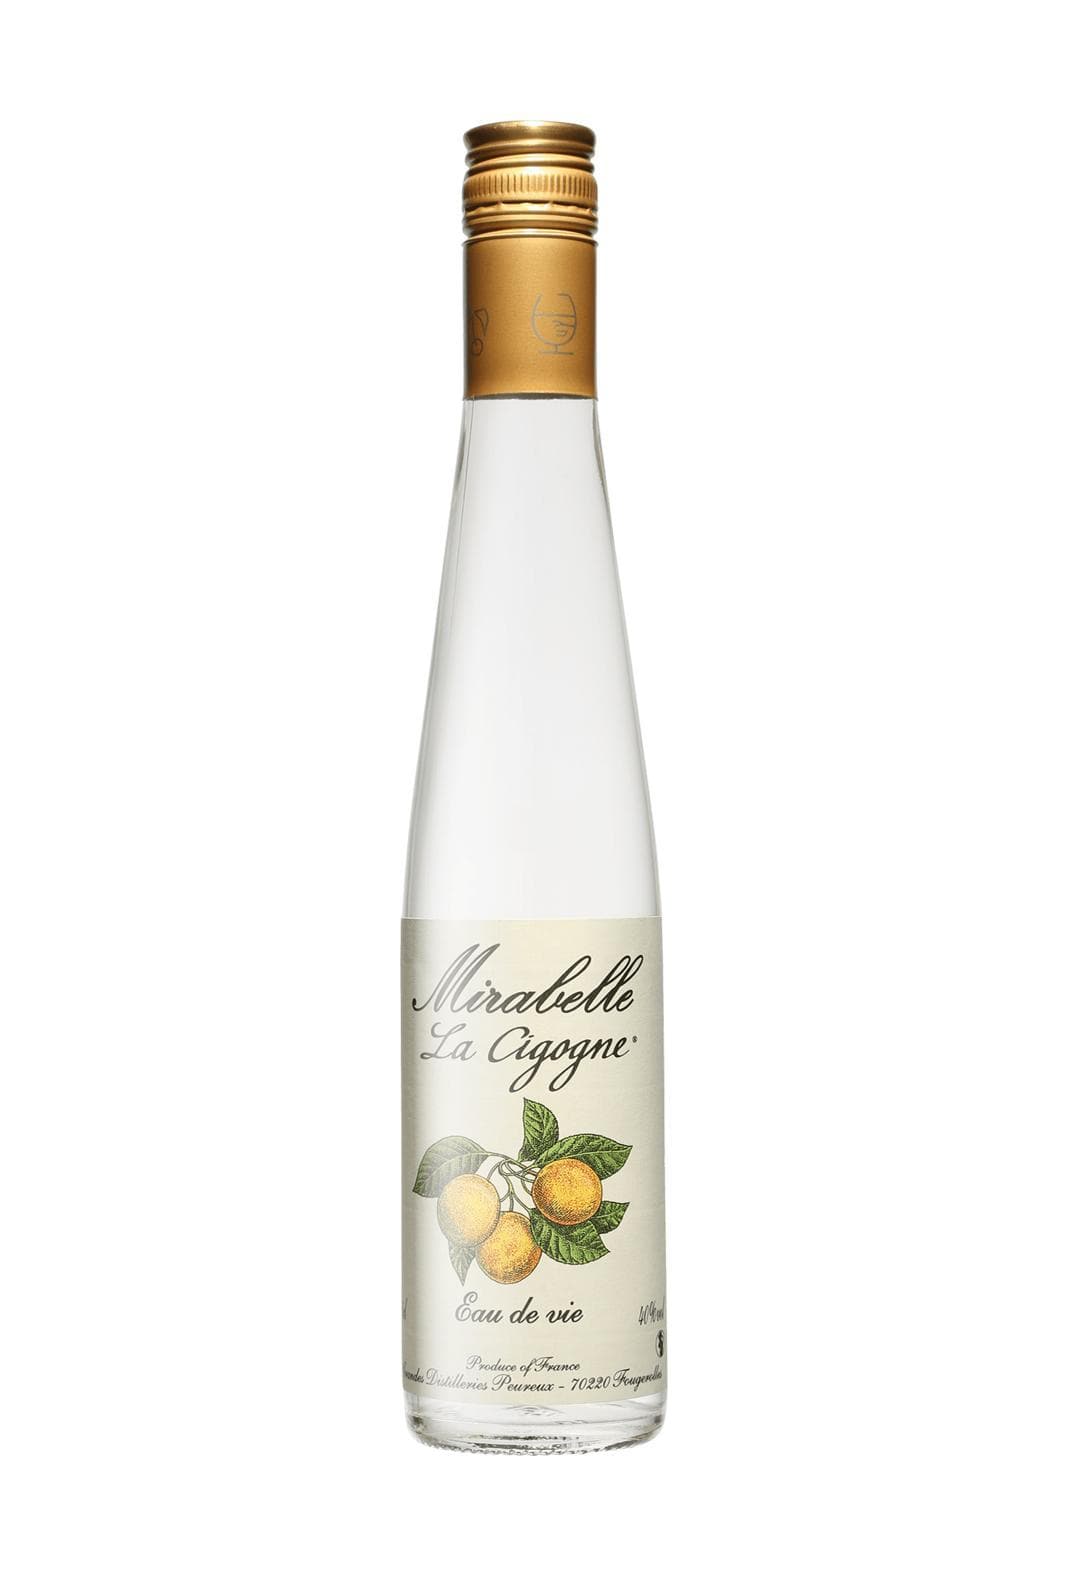 Peureux 'La Cigogne' Eau de Vie Mirabelle (Cherry Plum spirit) 40% 350ml | Liquor & Spirits | Shop online at Spirits of France